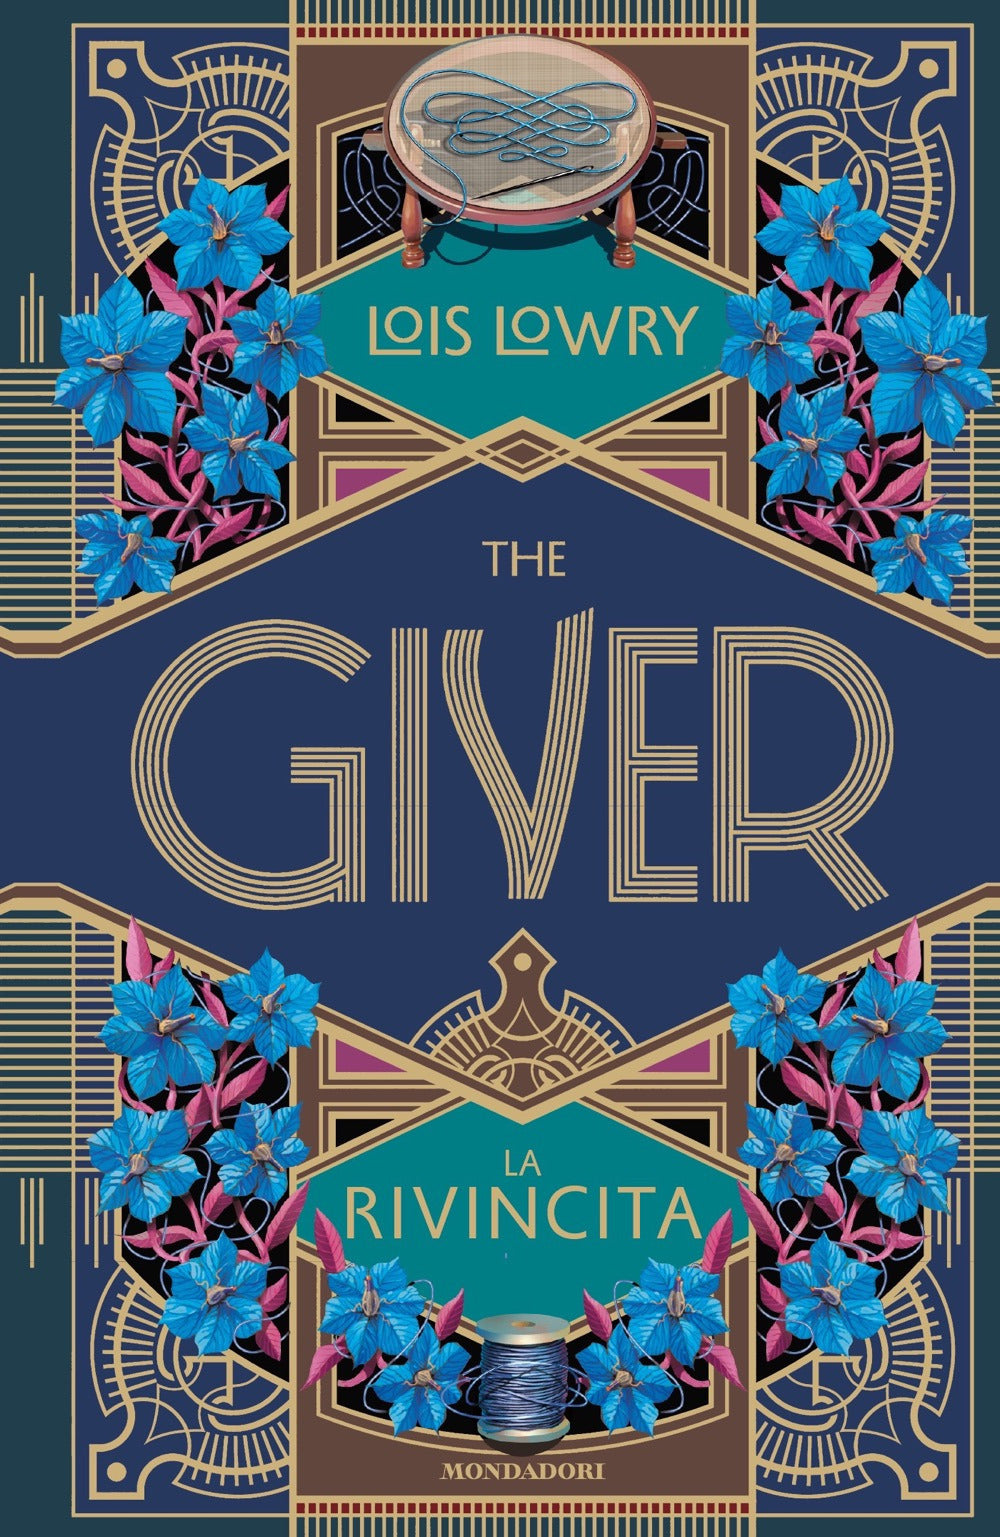 The giver. La rivincita.